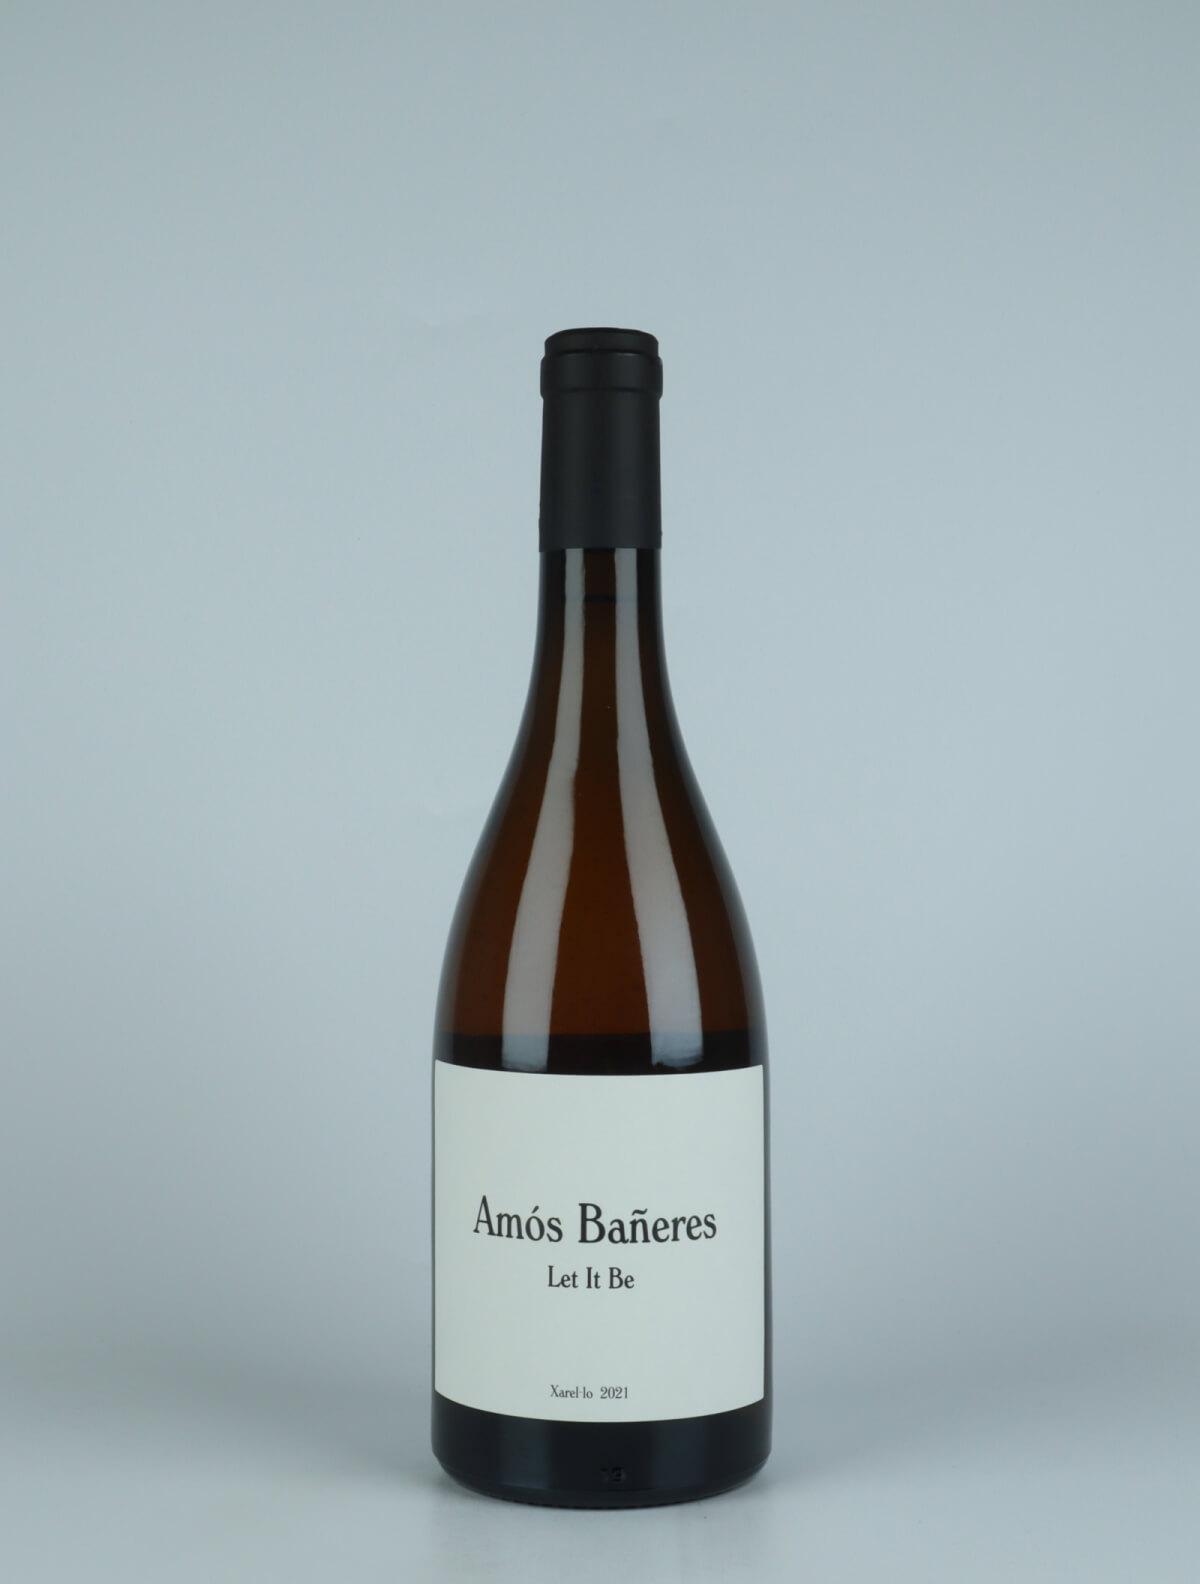 A bottle 2021 Let It Be White wine from Amós Bañeres, Penedès in Spain